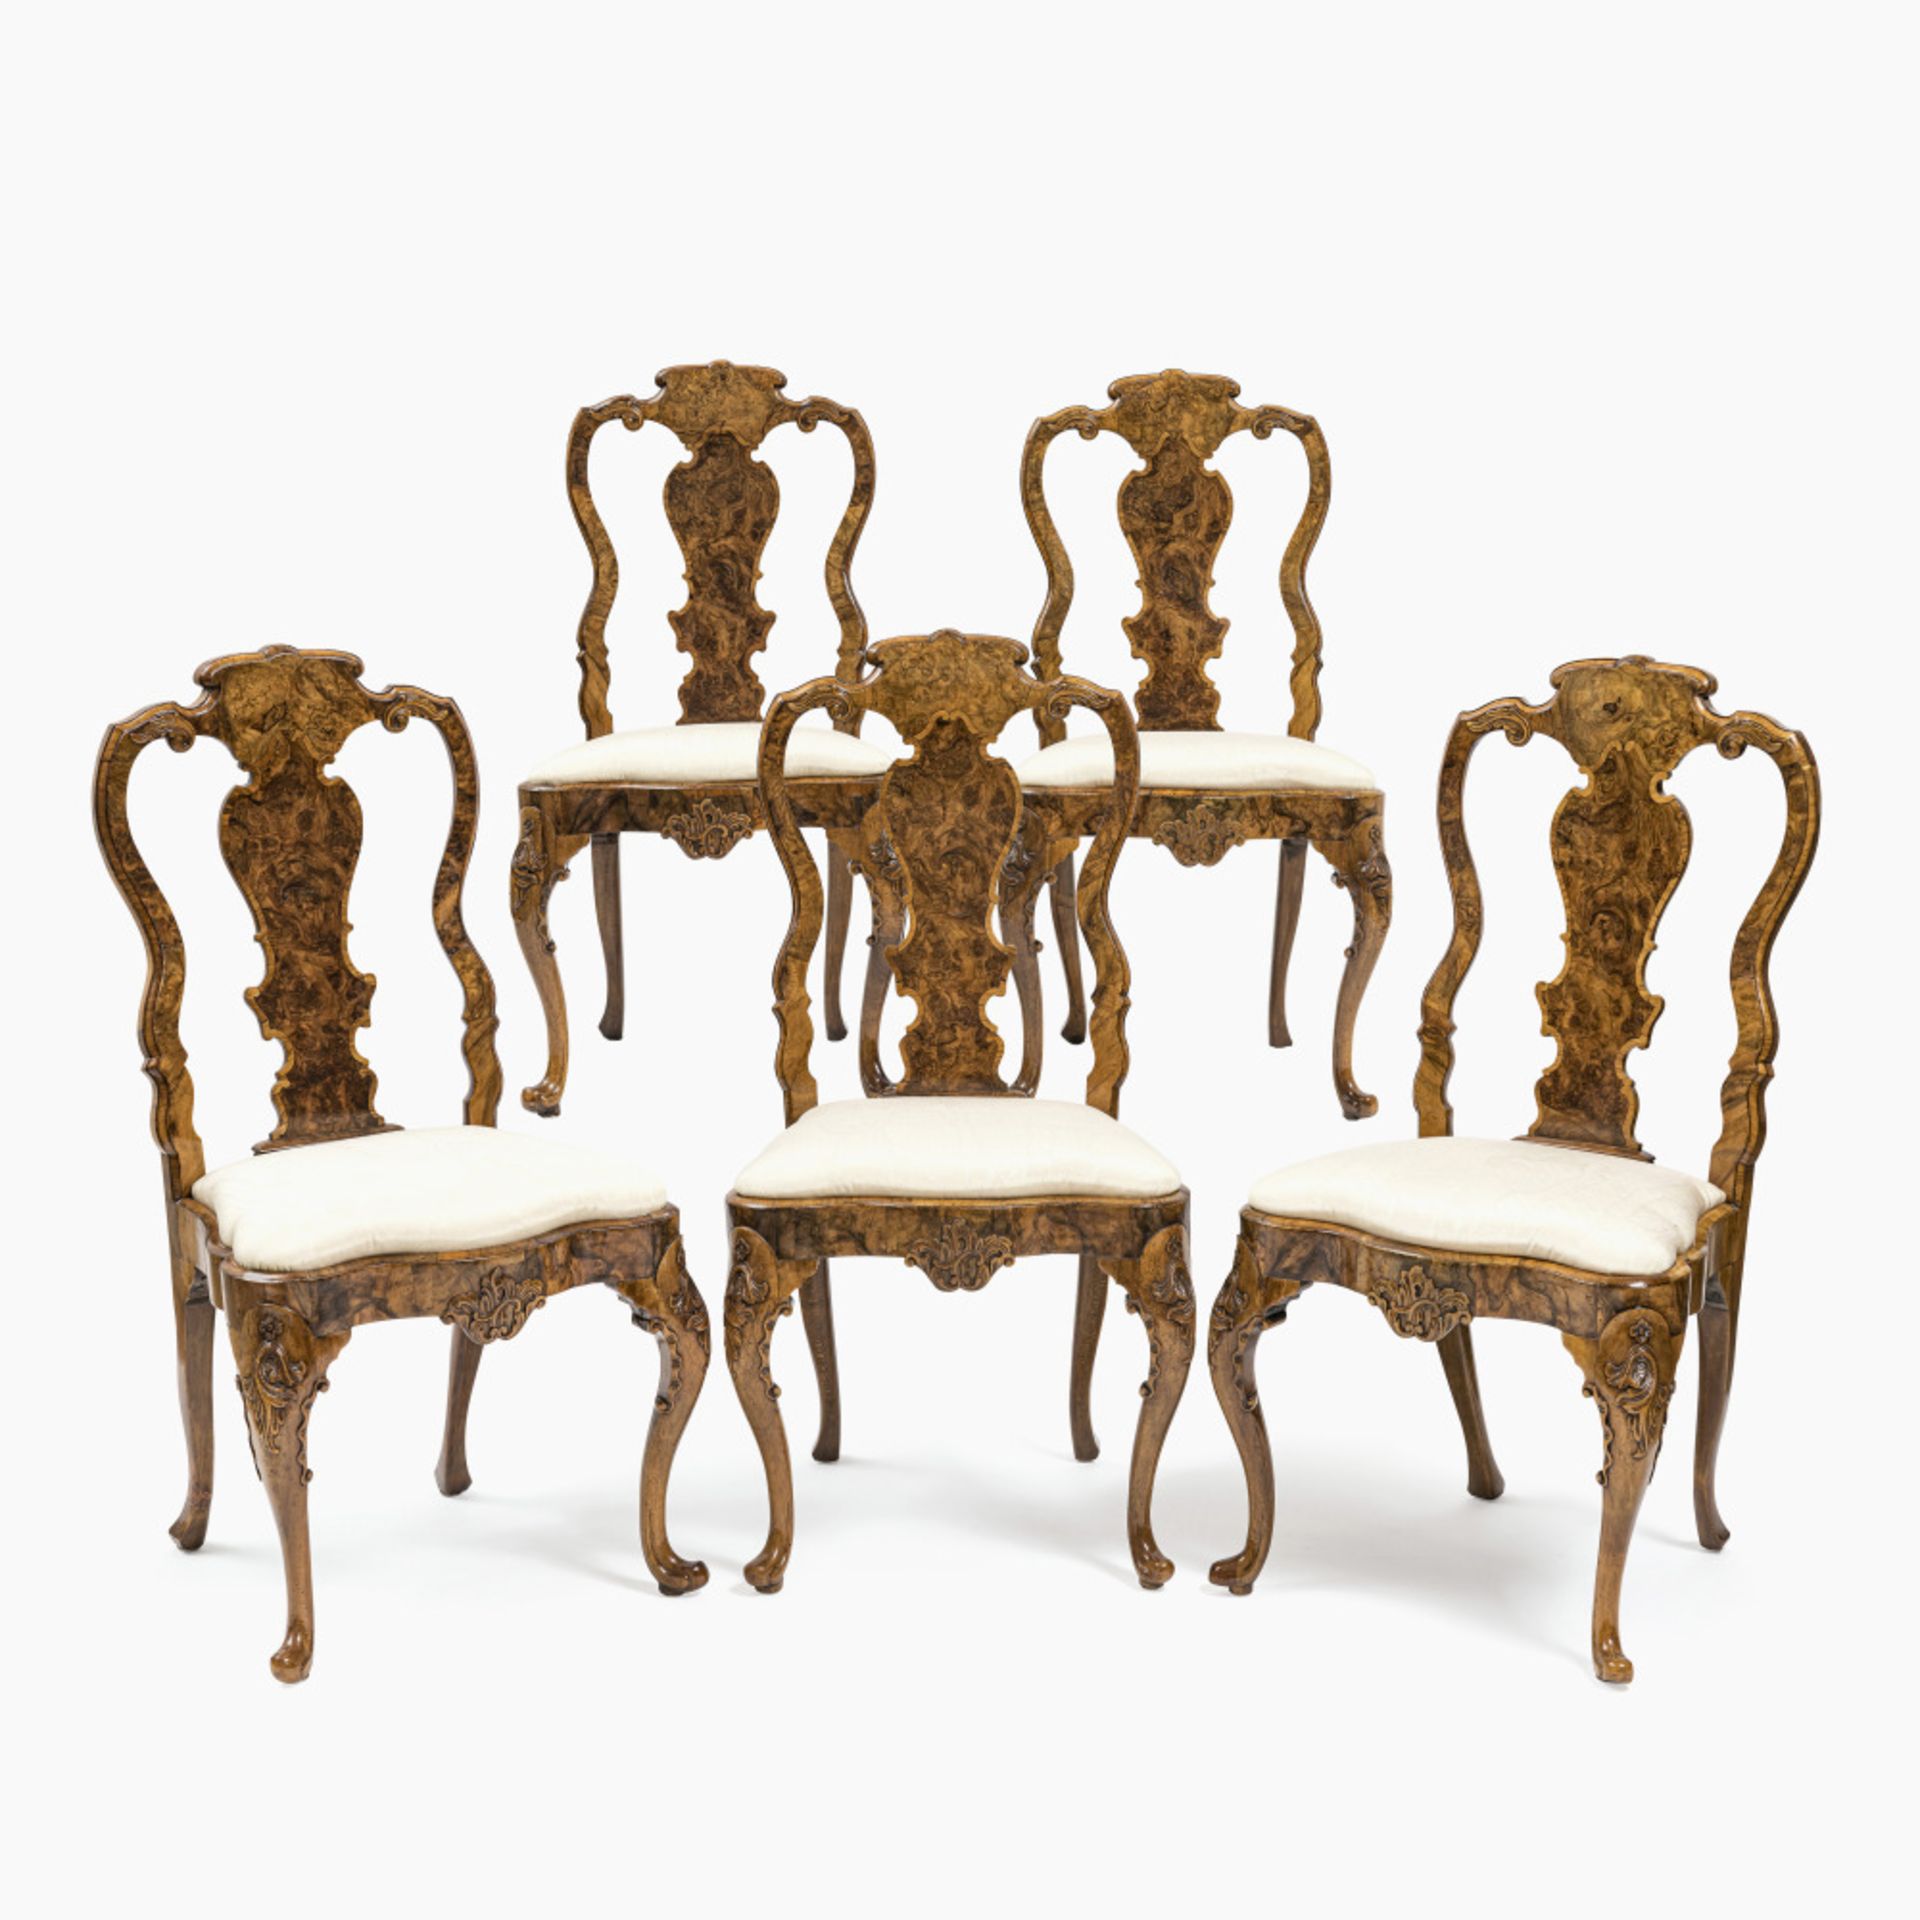 A set of five chairs - Abraham Roentgen manufactory (1711 Mülheim am Rhein - 1793 Herrnhut), Neuwied - Image 9 of 9